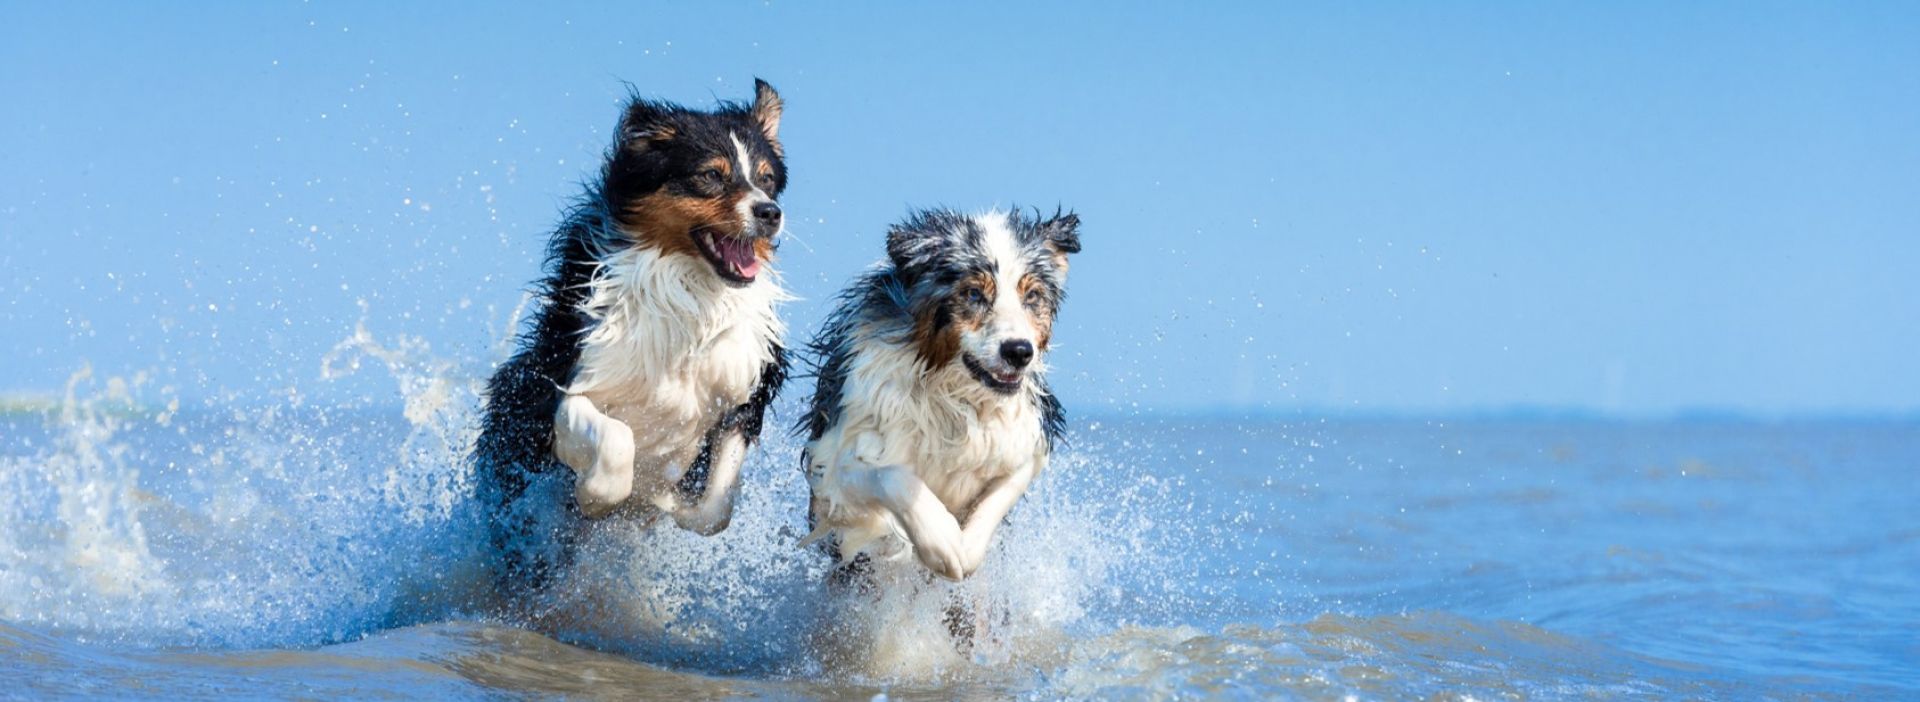 Hunde springen durchs Wasser